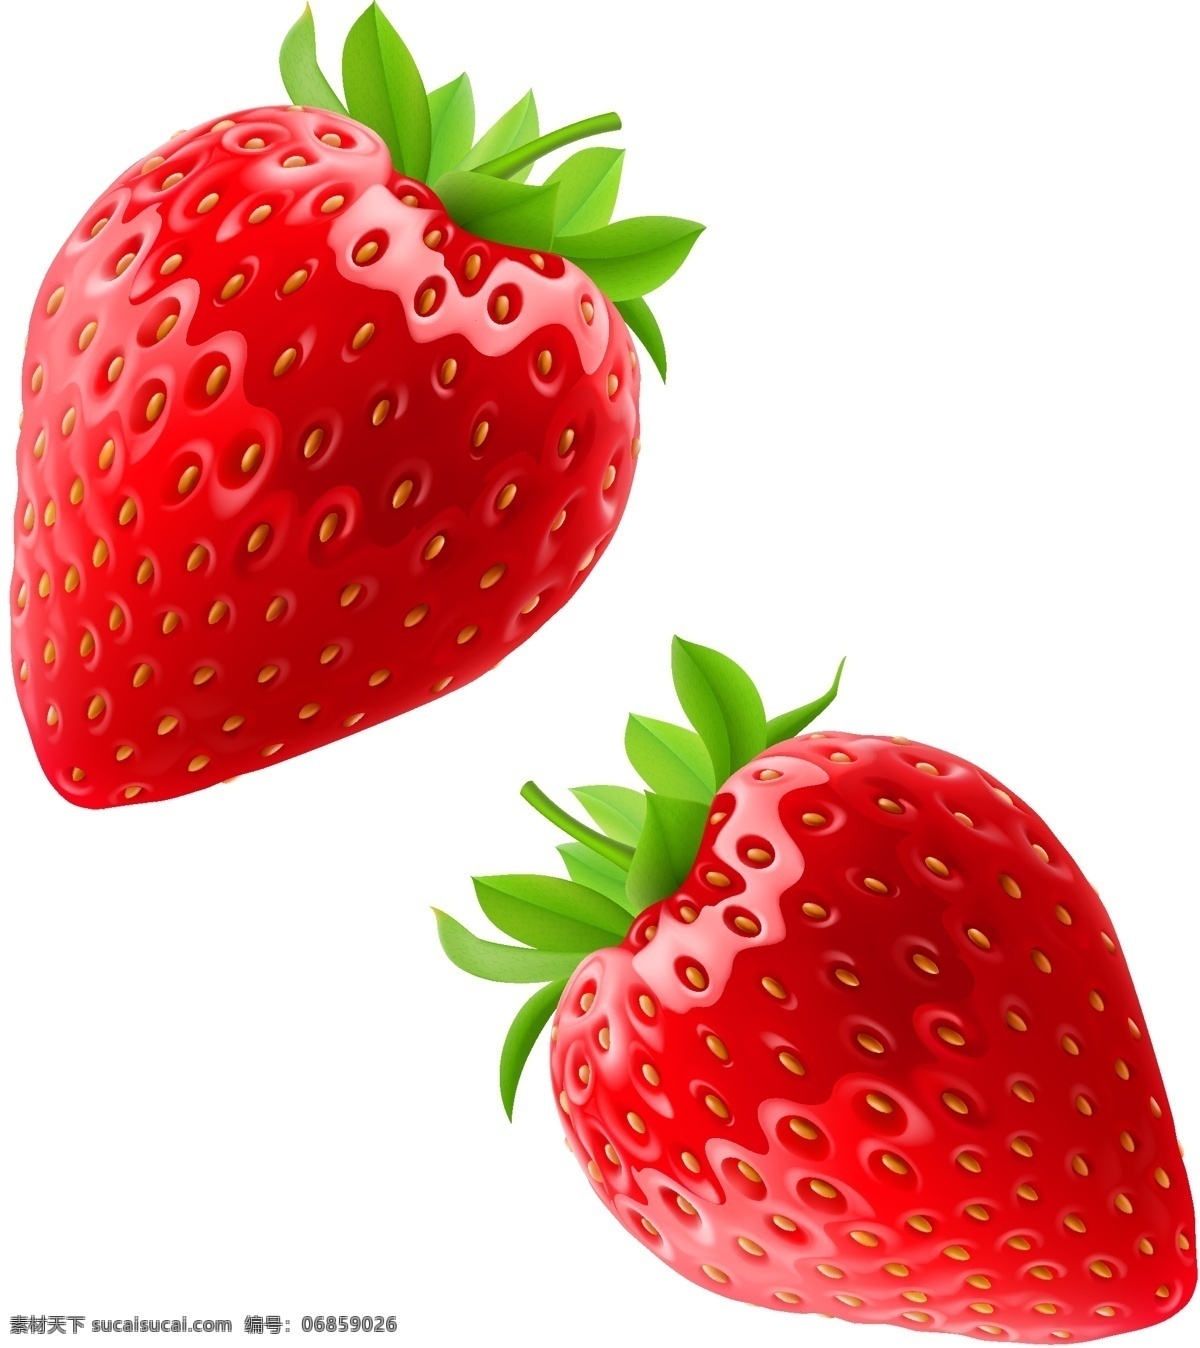 红色草莓矢量 草莓矢量素材 草莓 矢量素材 矢量 绿叶 水果 红色草莓 水果蔬菜素材 生物世界